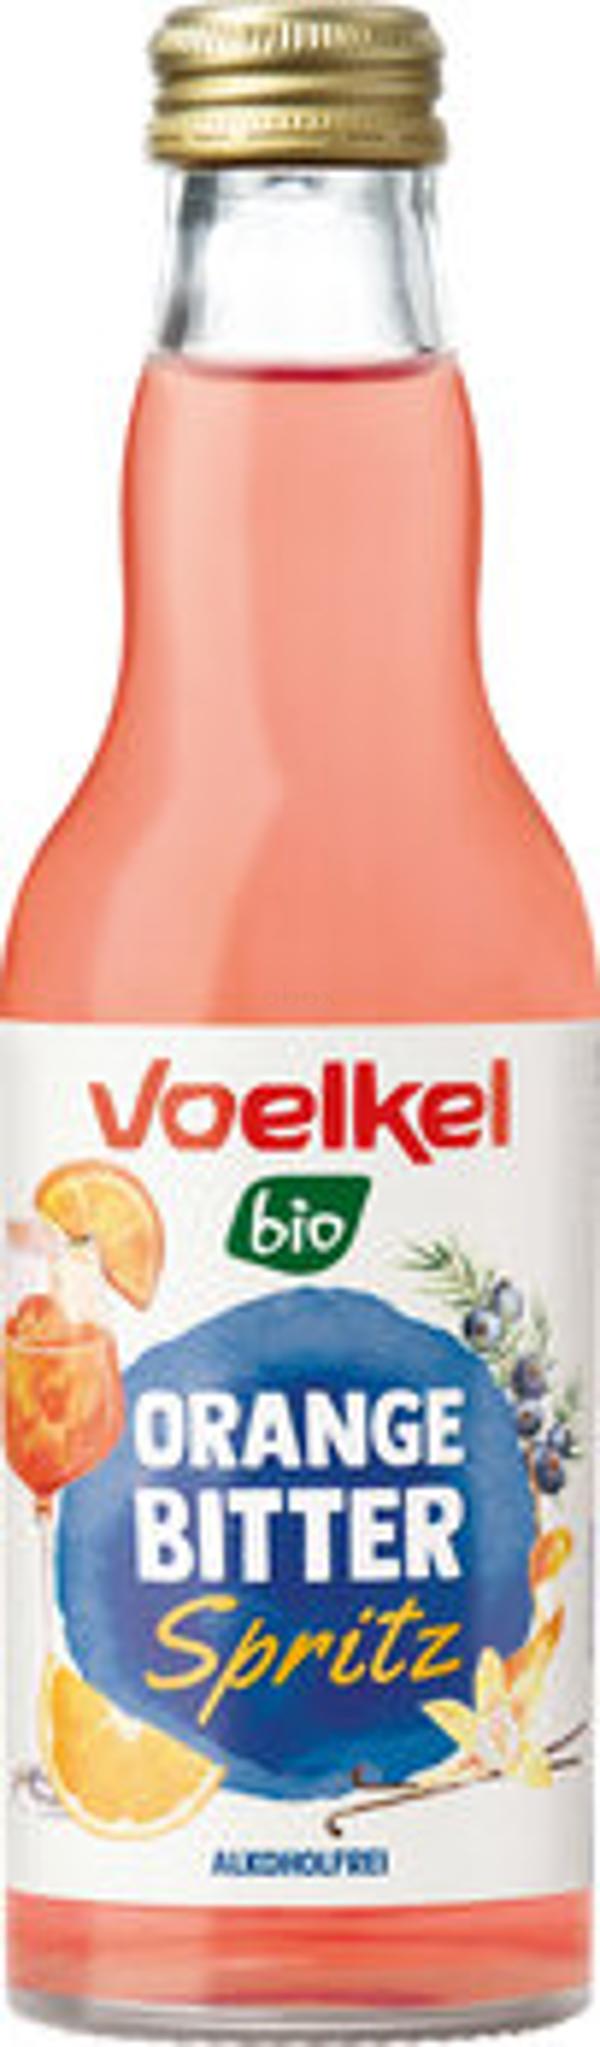 Produktfoto zu Orange Bitter Spritz Cocktail alkoholfrei, 0,2 l